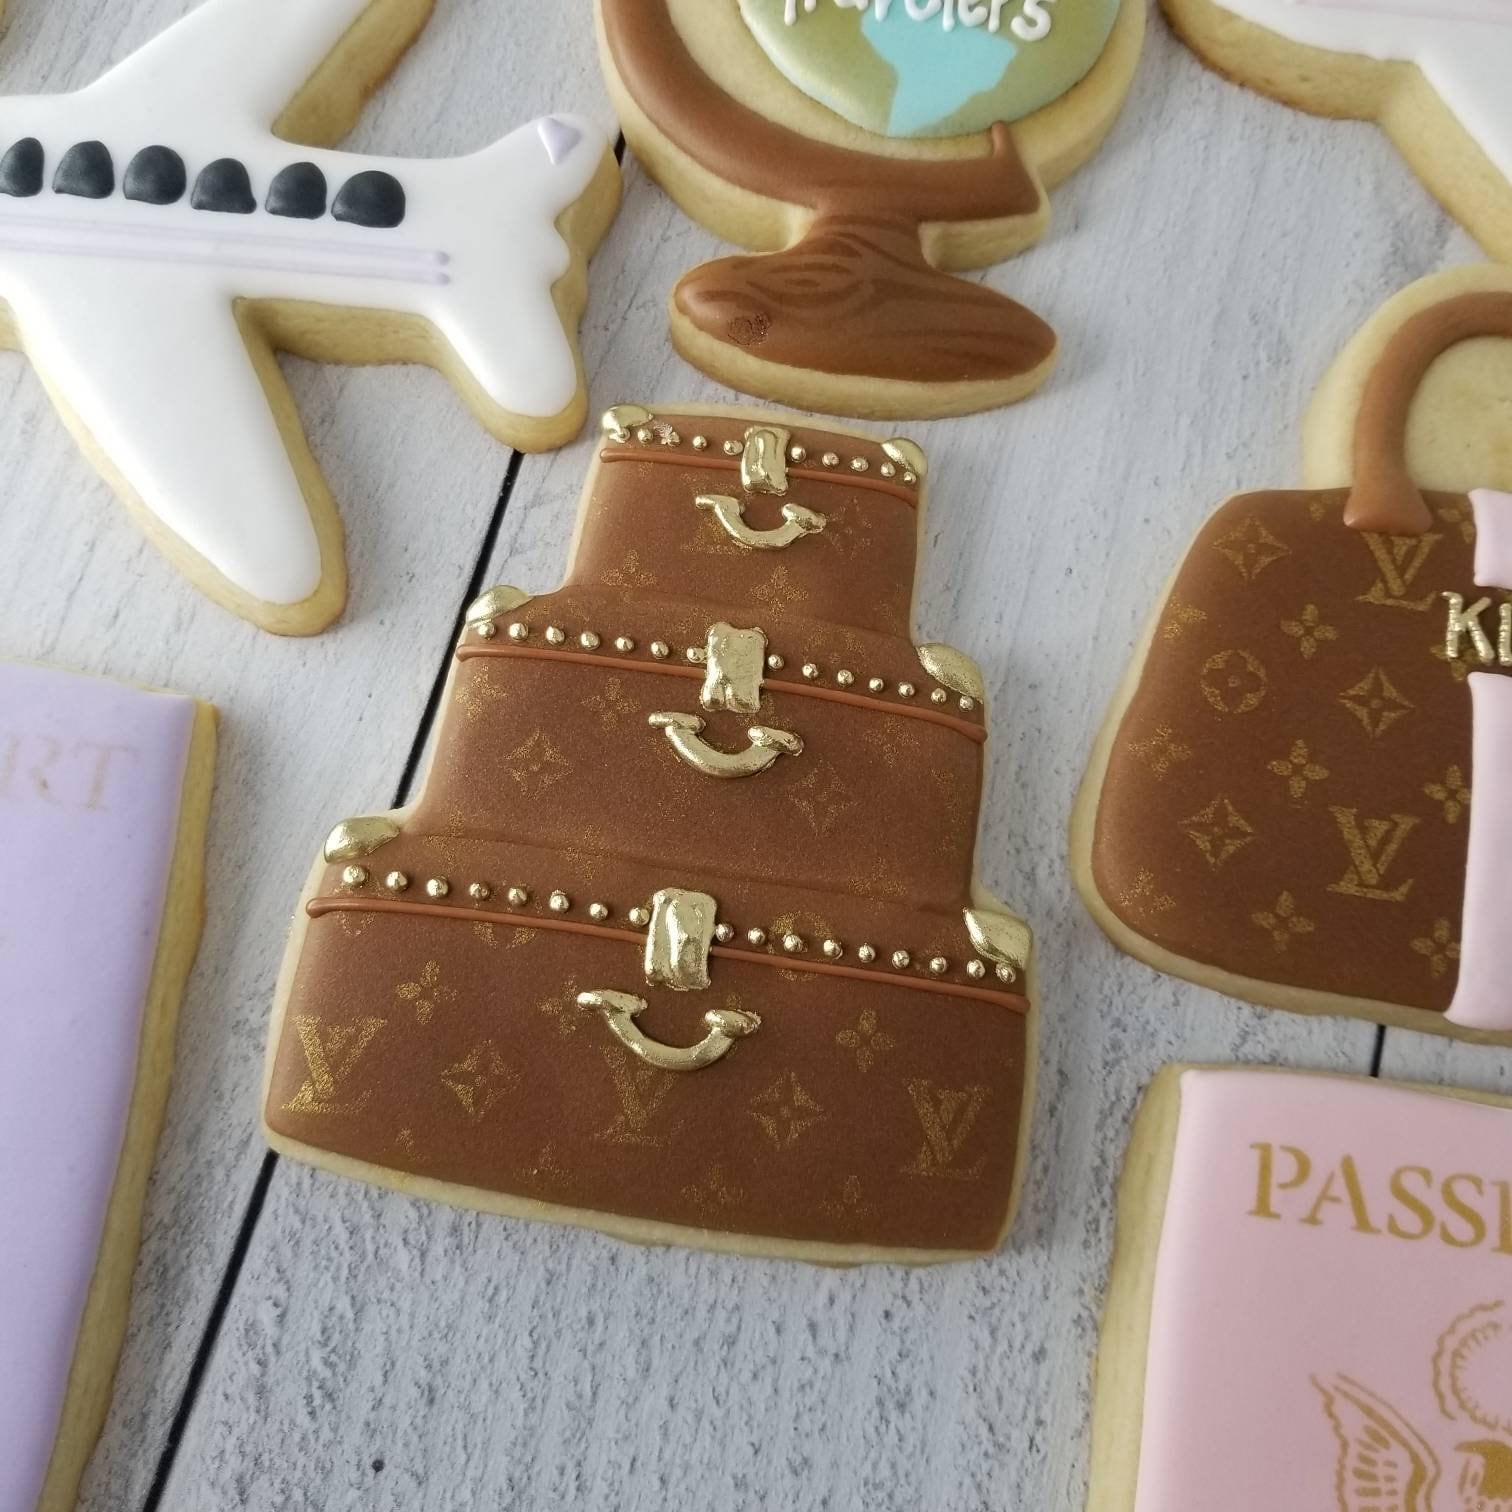 Designer Luggage Cookies, Suitcase Cookies